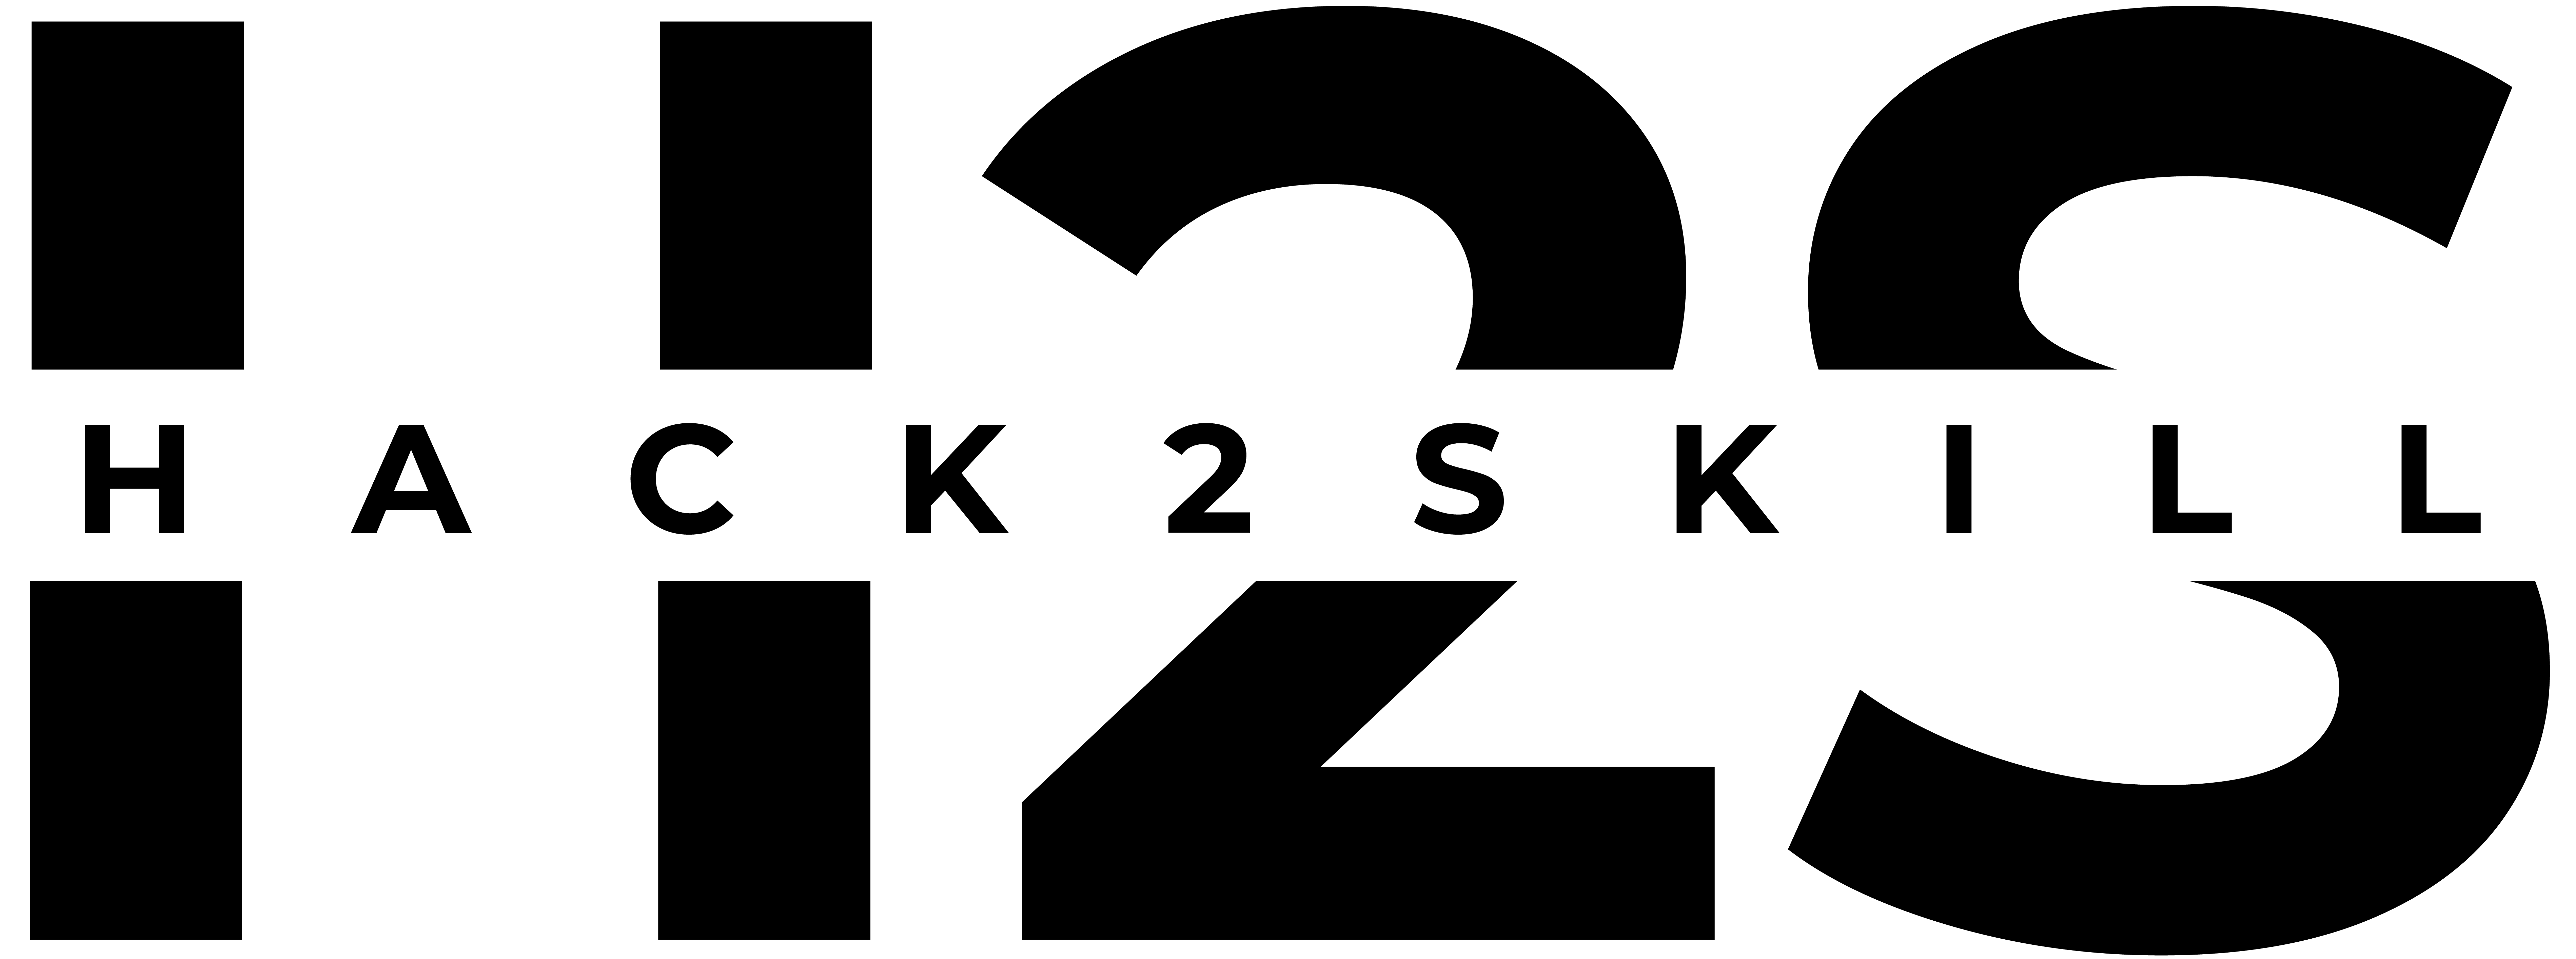 Hack2skill Dark Logo